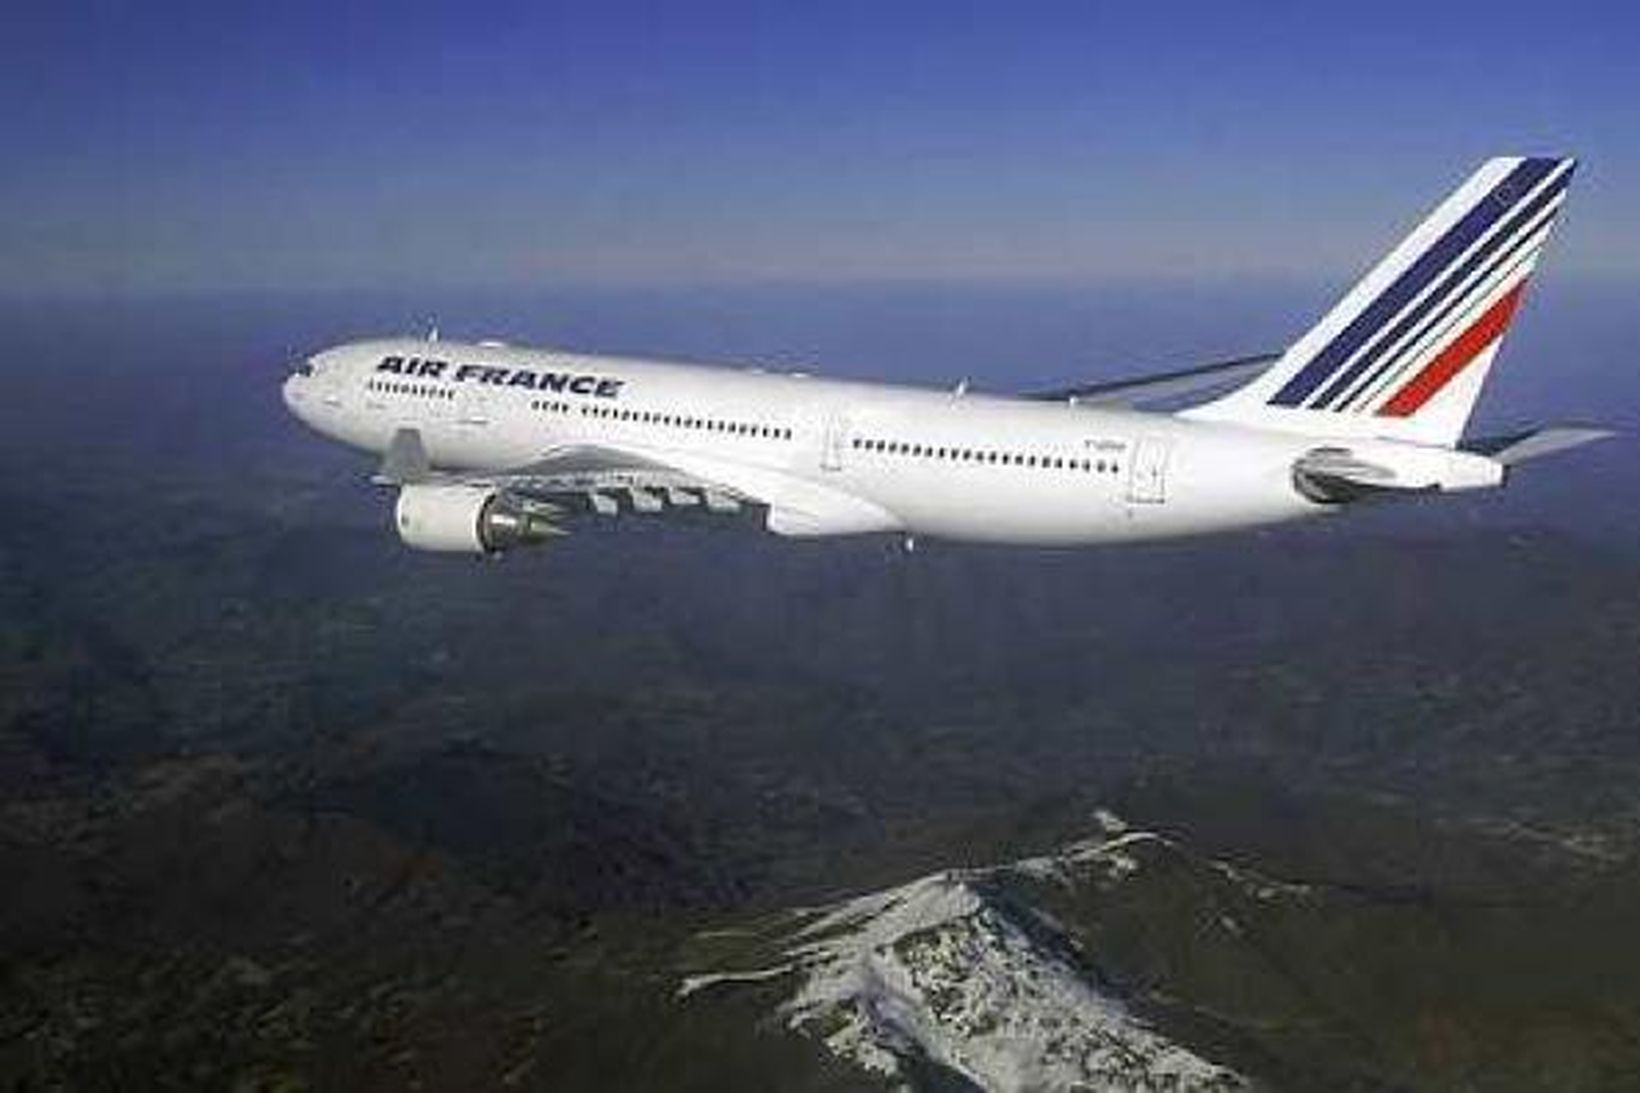 Airbus A330-200 flugvél líkt og sú frá Air France sem …